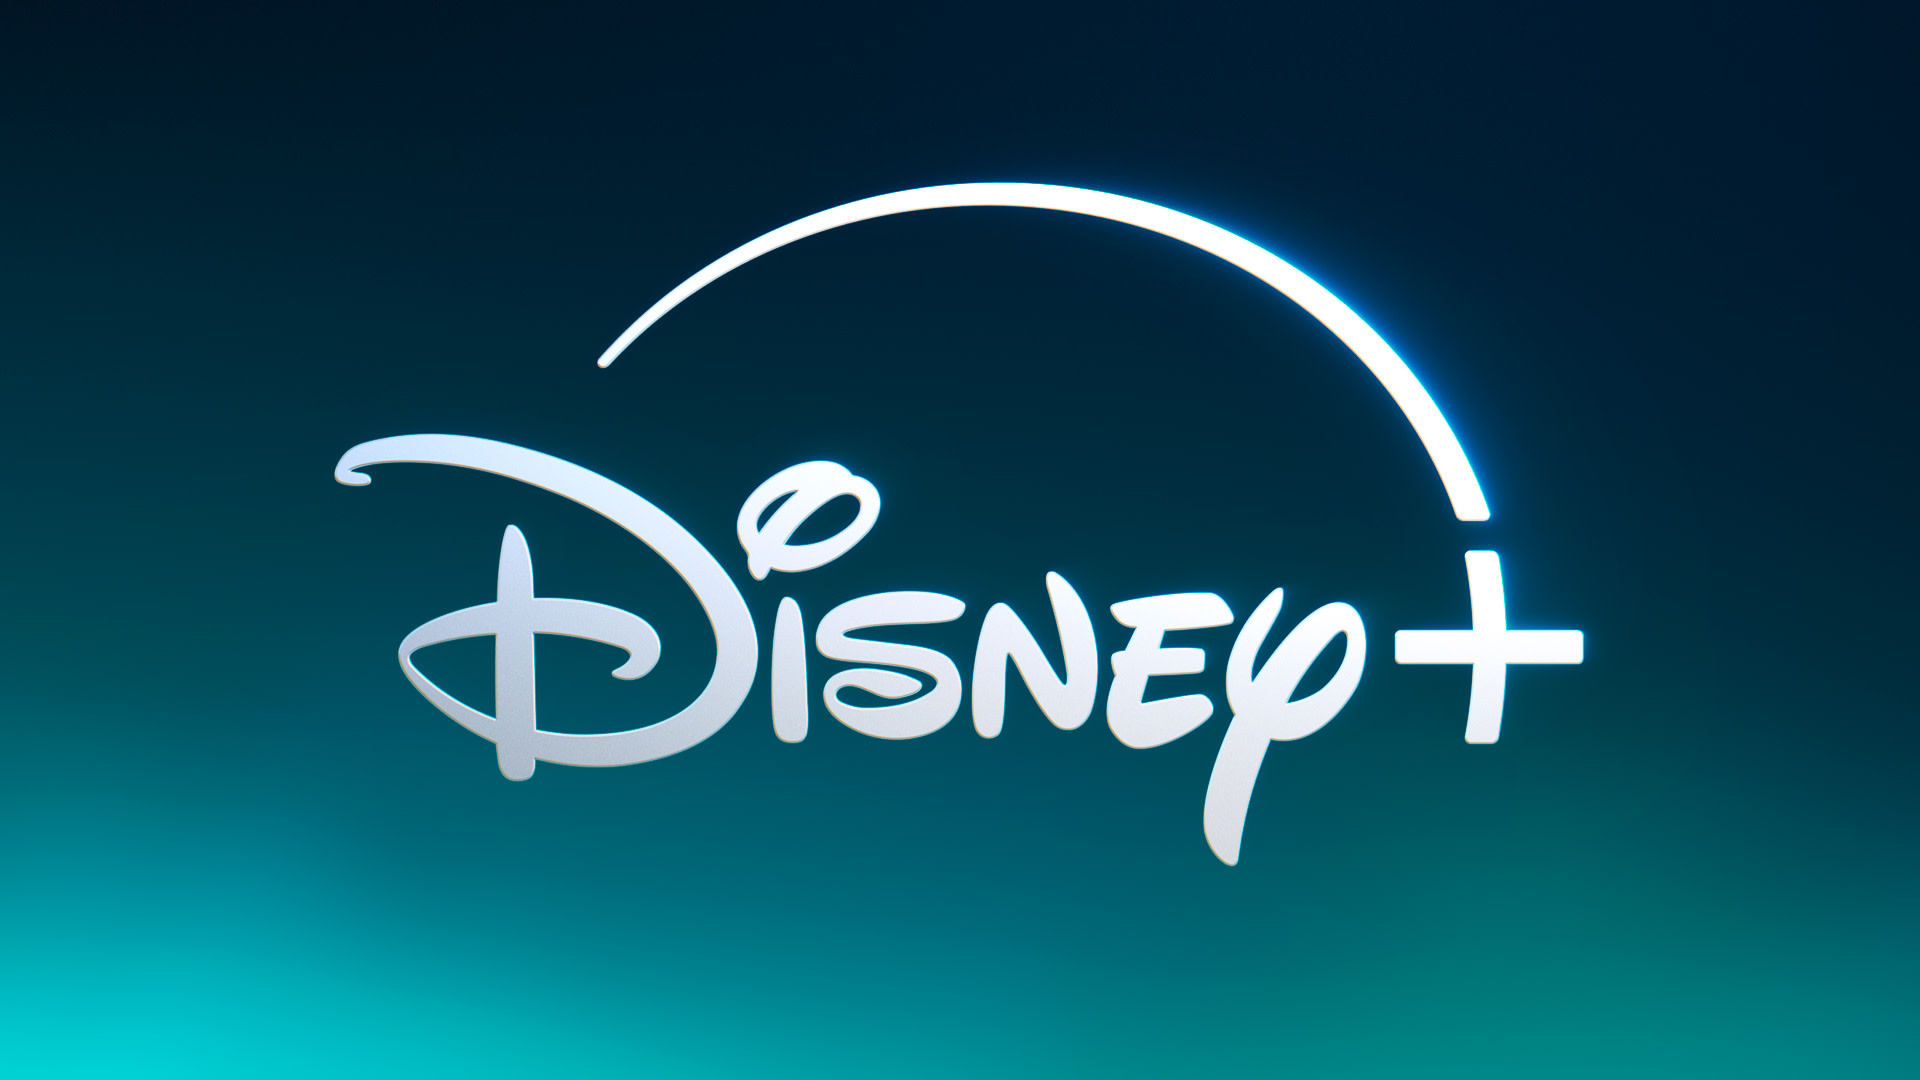 Ostatni odcinek jednego z najlepszych seriali już na Disney+! Będzie drugi sezon?